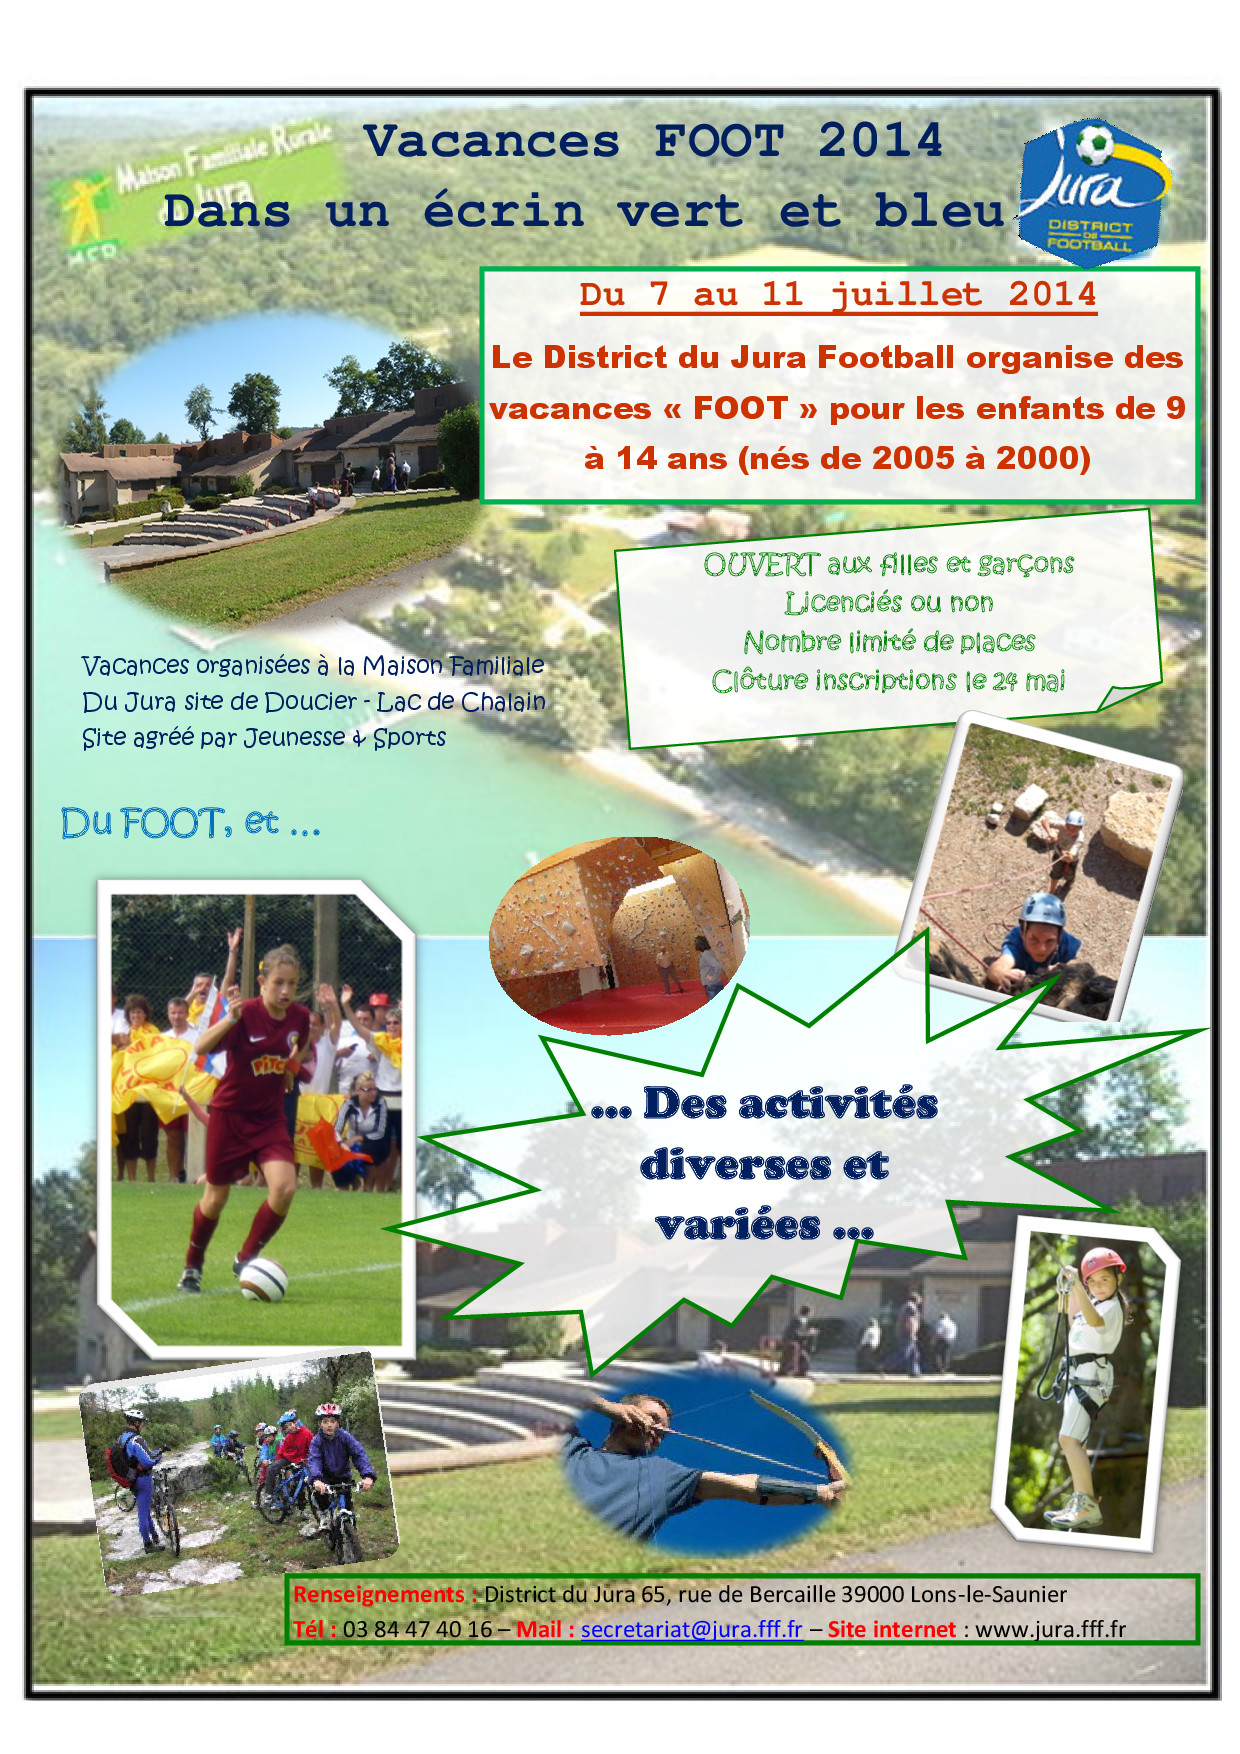 Le District du Jura propose ses Vacances FOOT 2014.